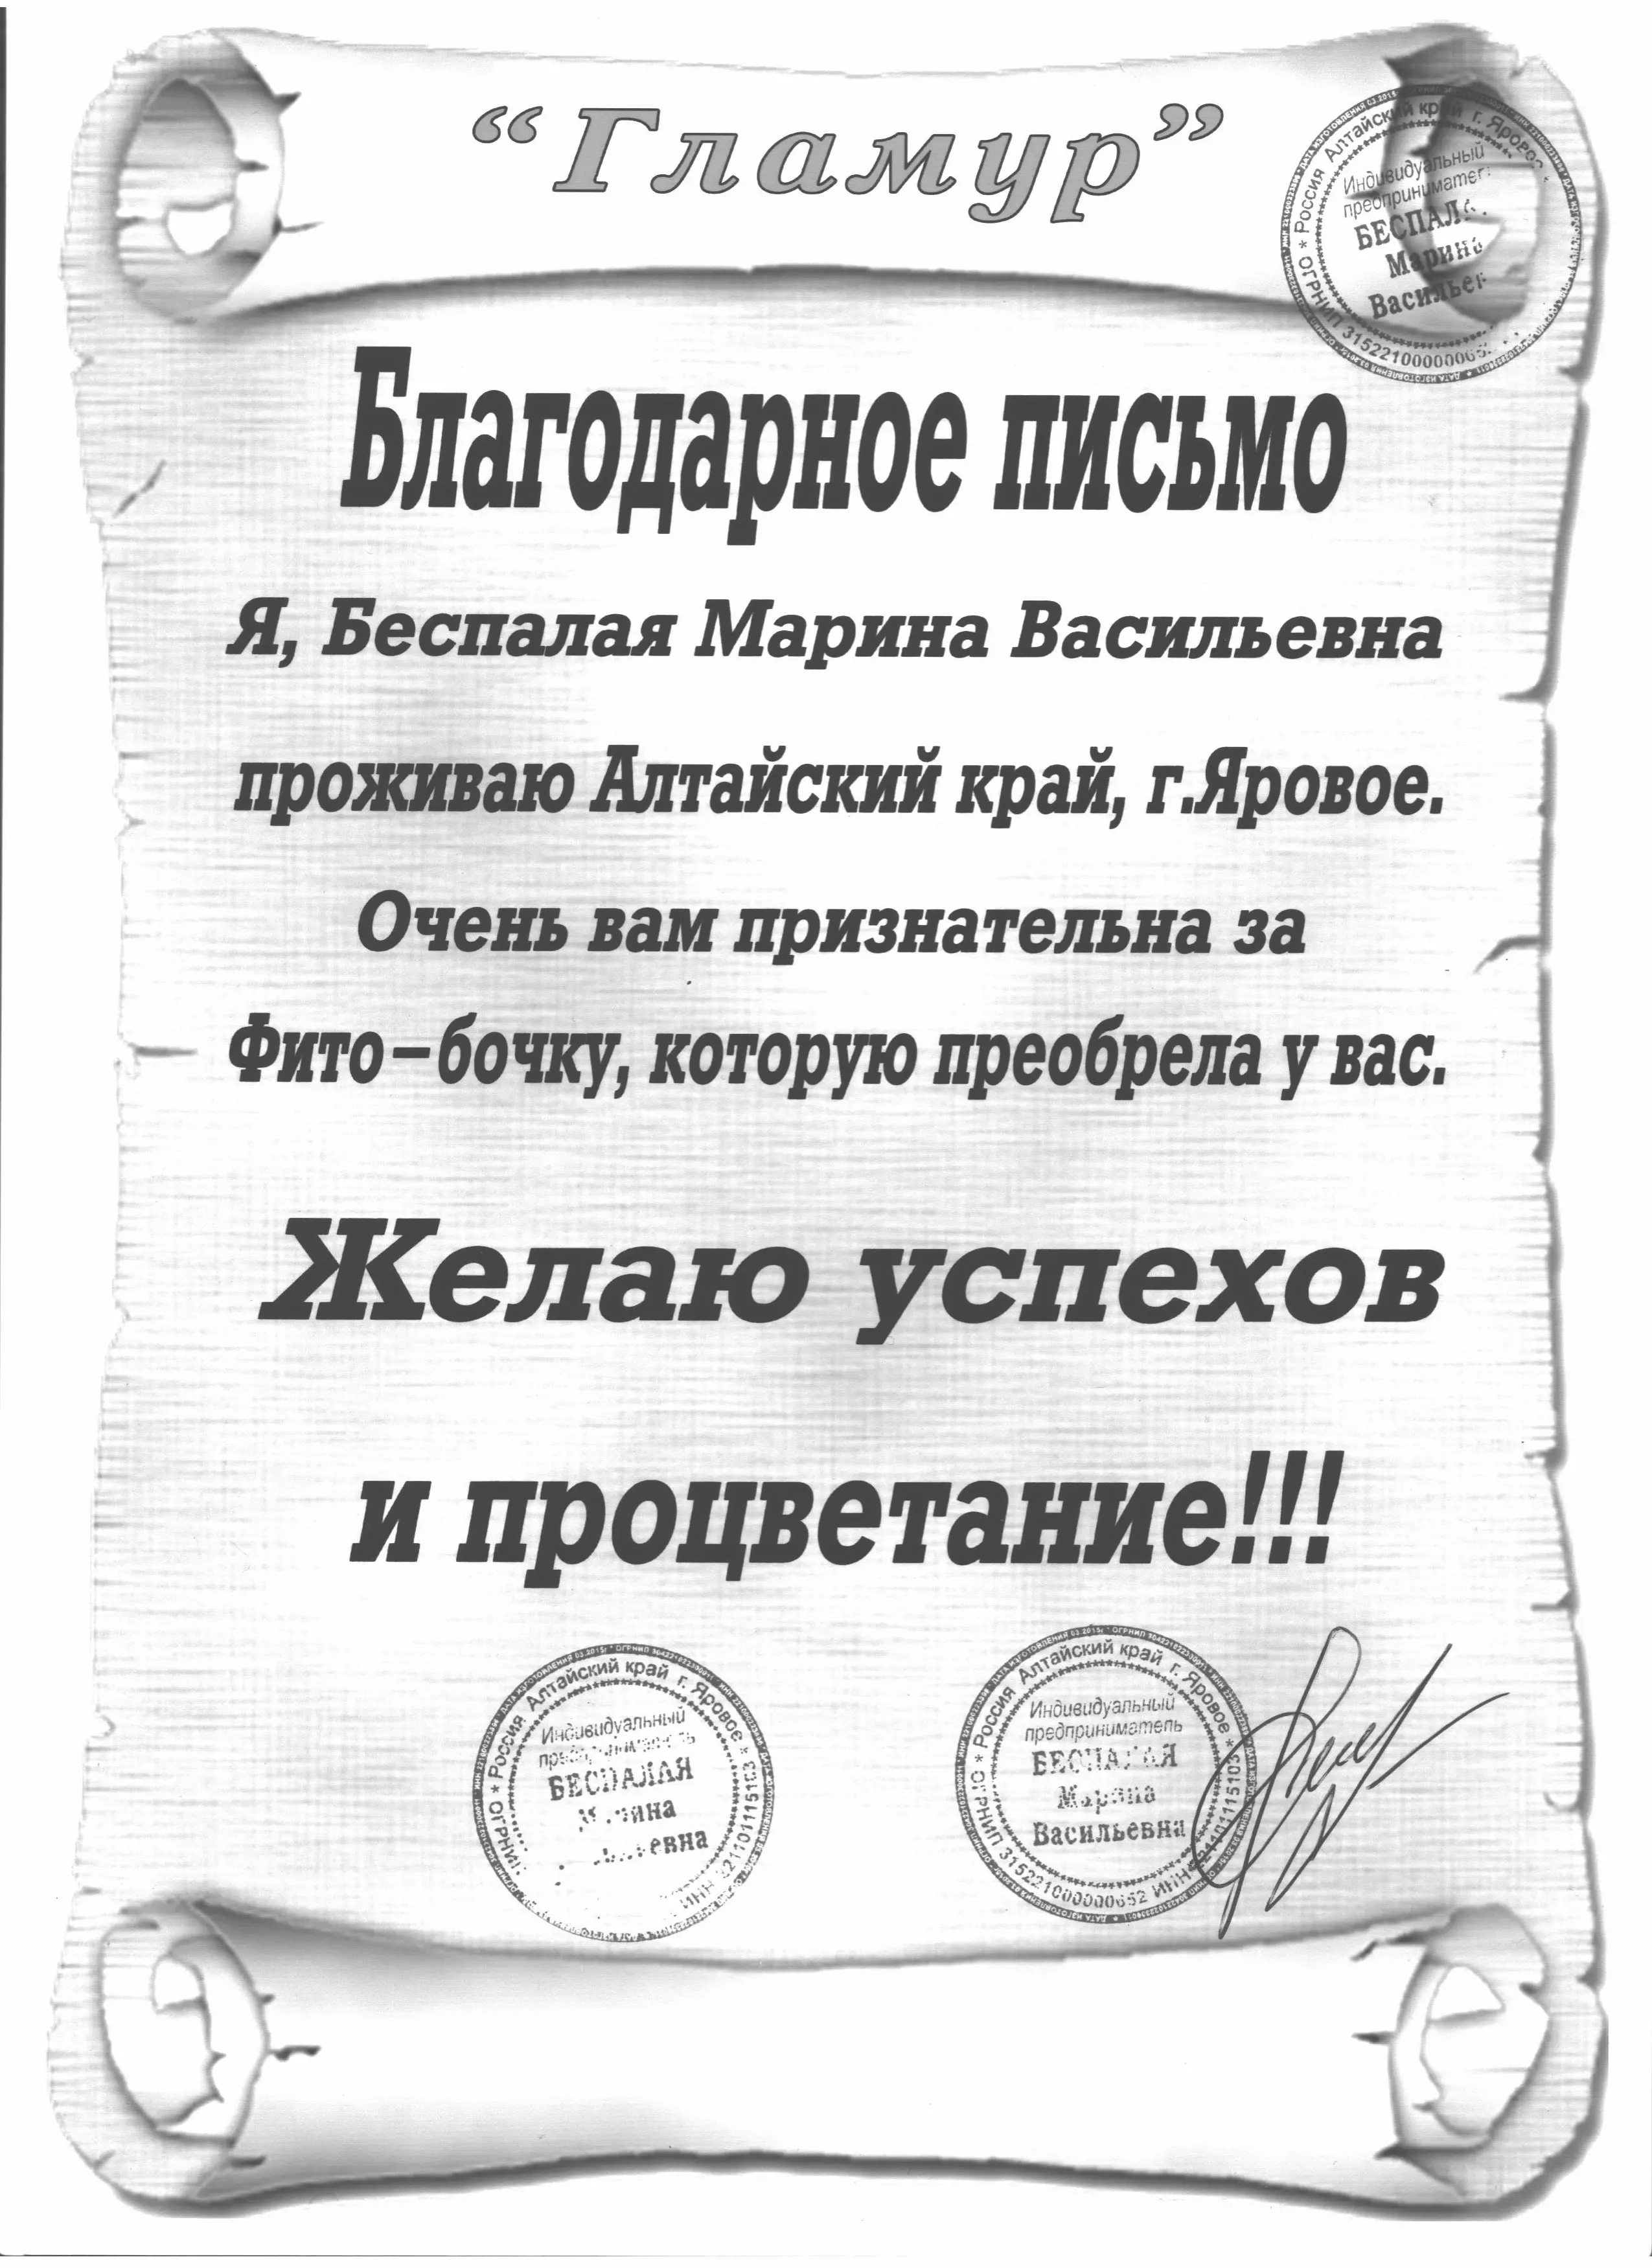 Благодарственное письмо от салона красоты “Гламур” г. Яровое, Алтайский край